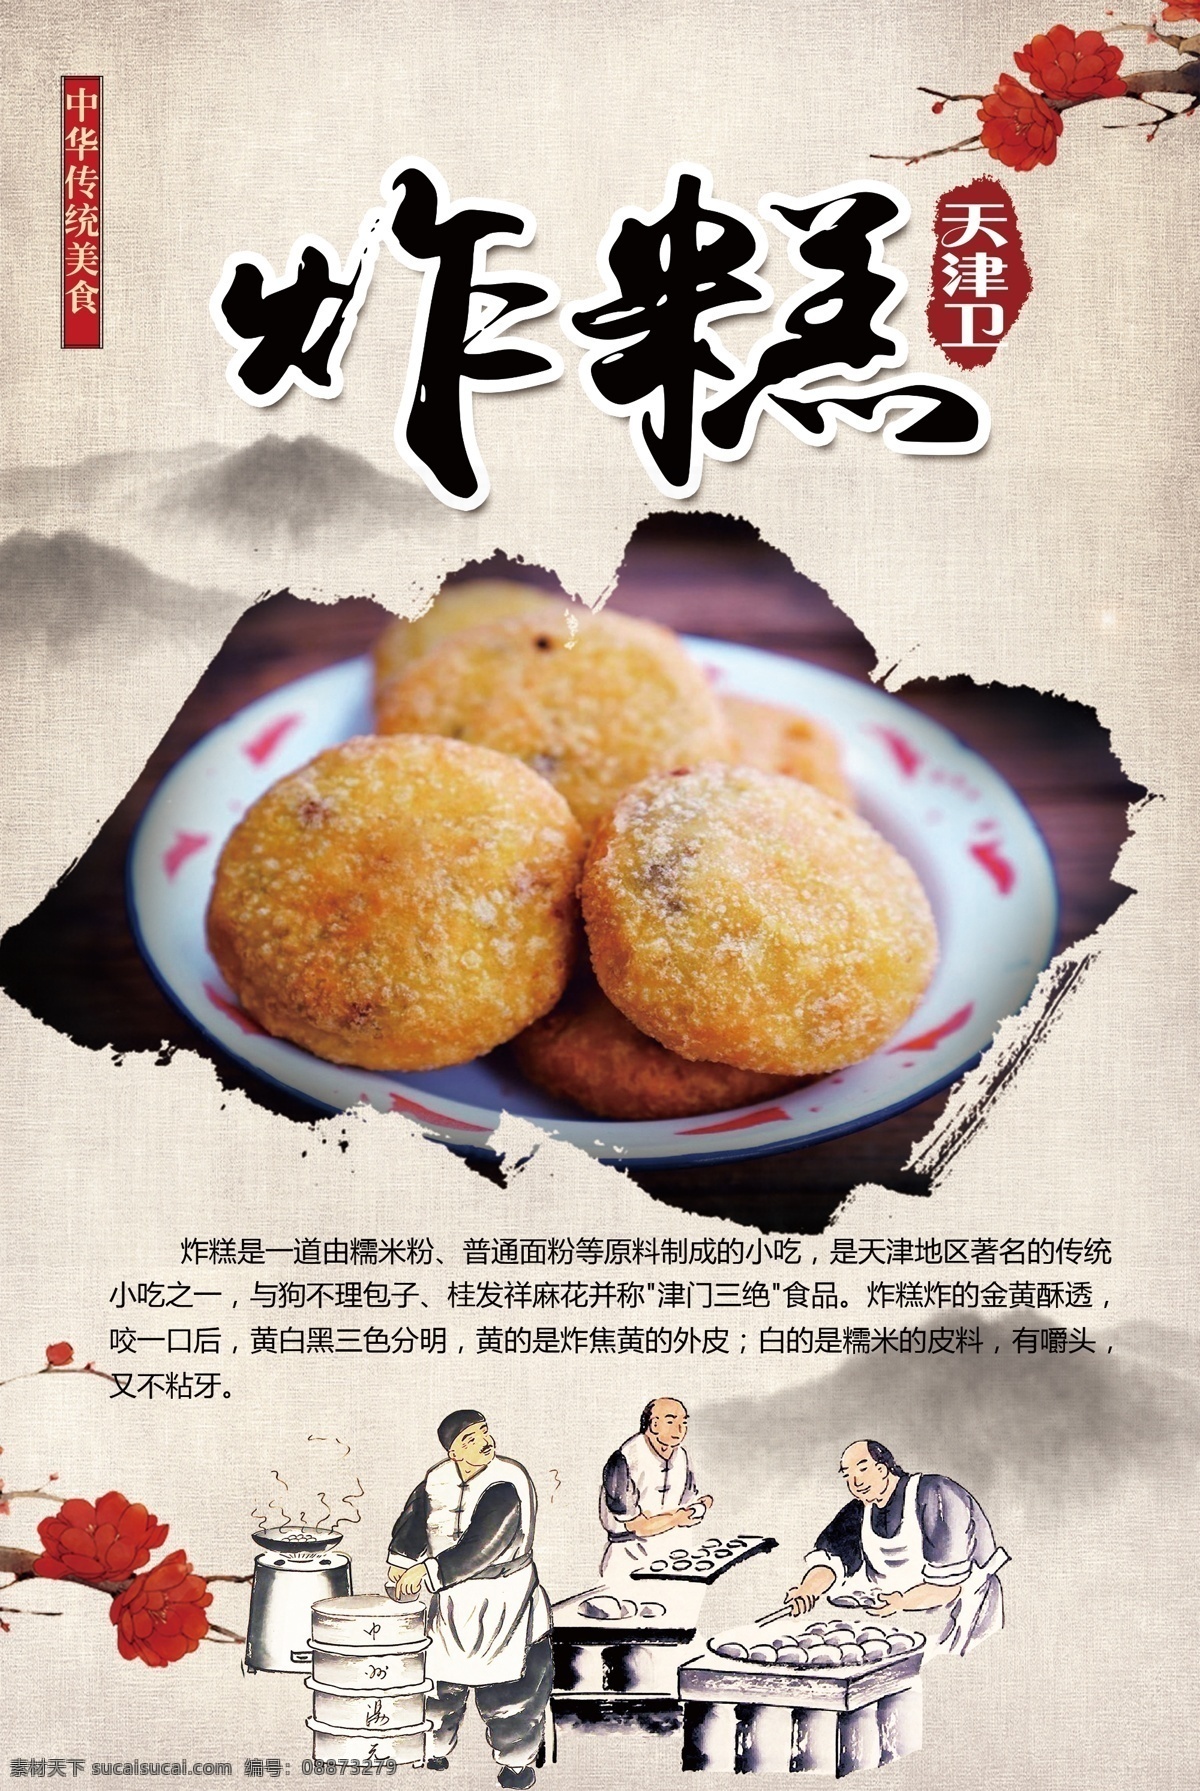 传统美食 天津炸糕 中华美食 美食 文化艺术 传统文化